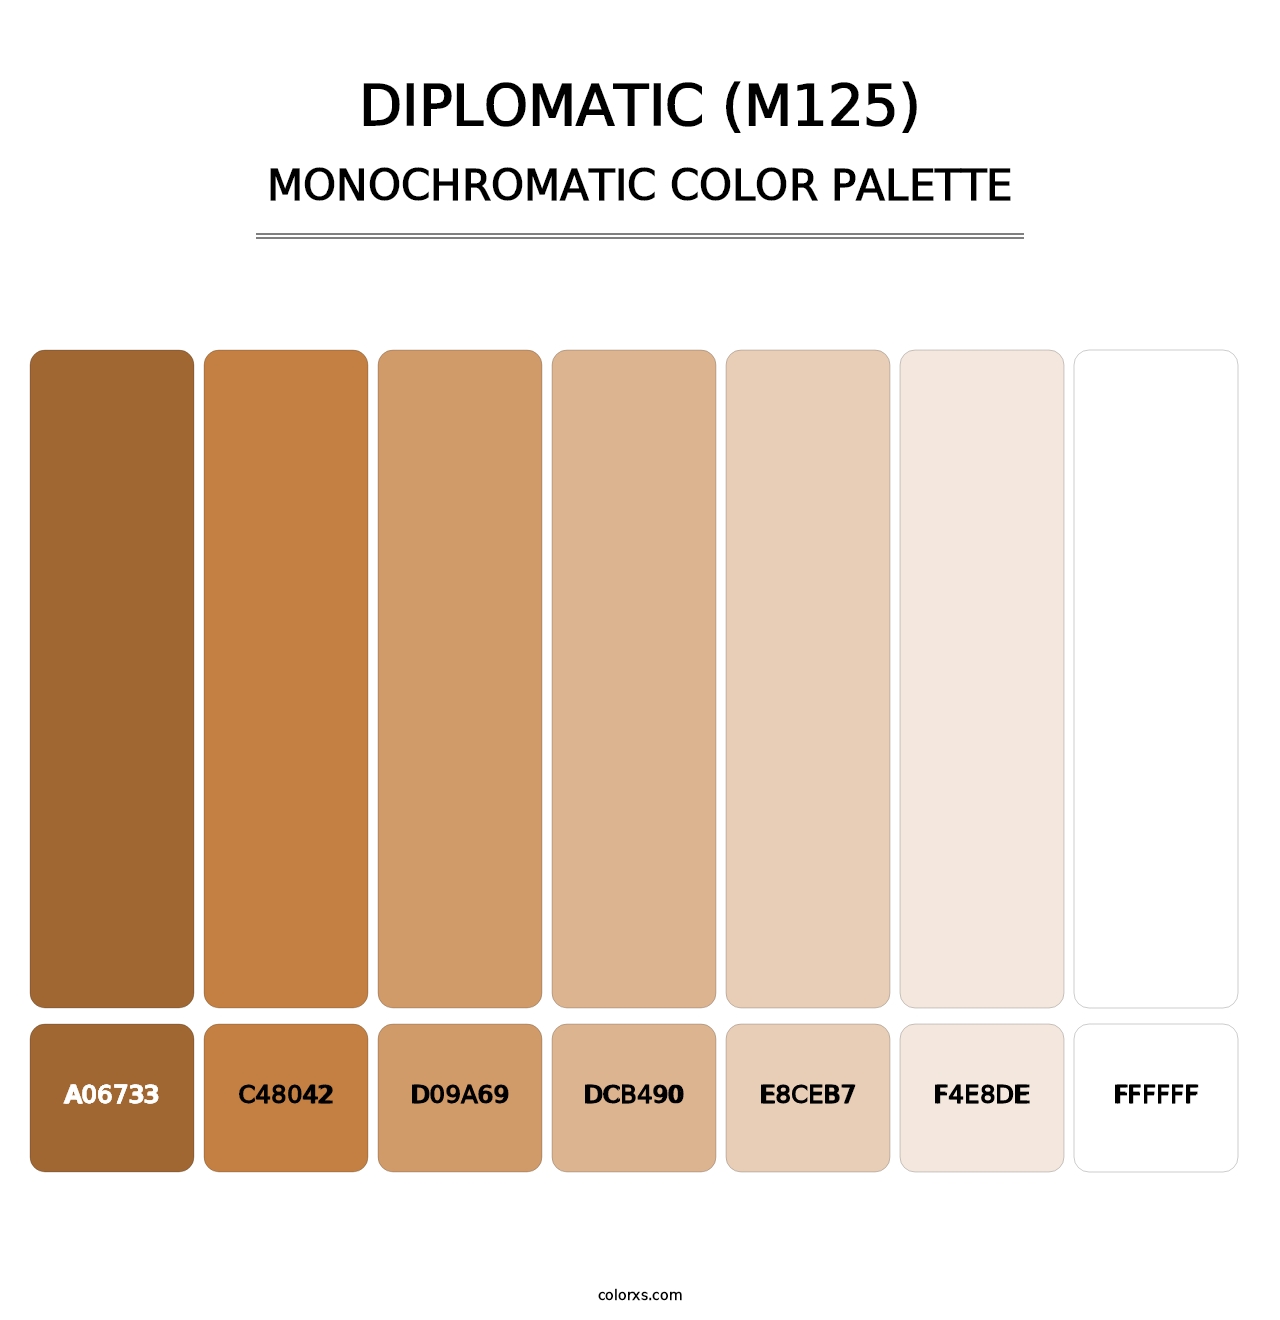 Diplomatic (M125) - Monochromatic Color Palette